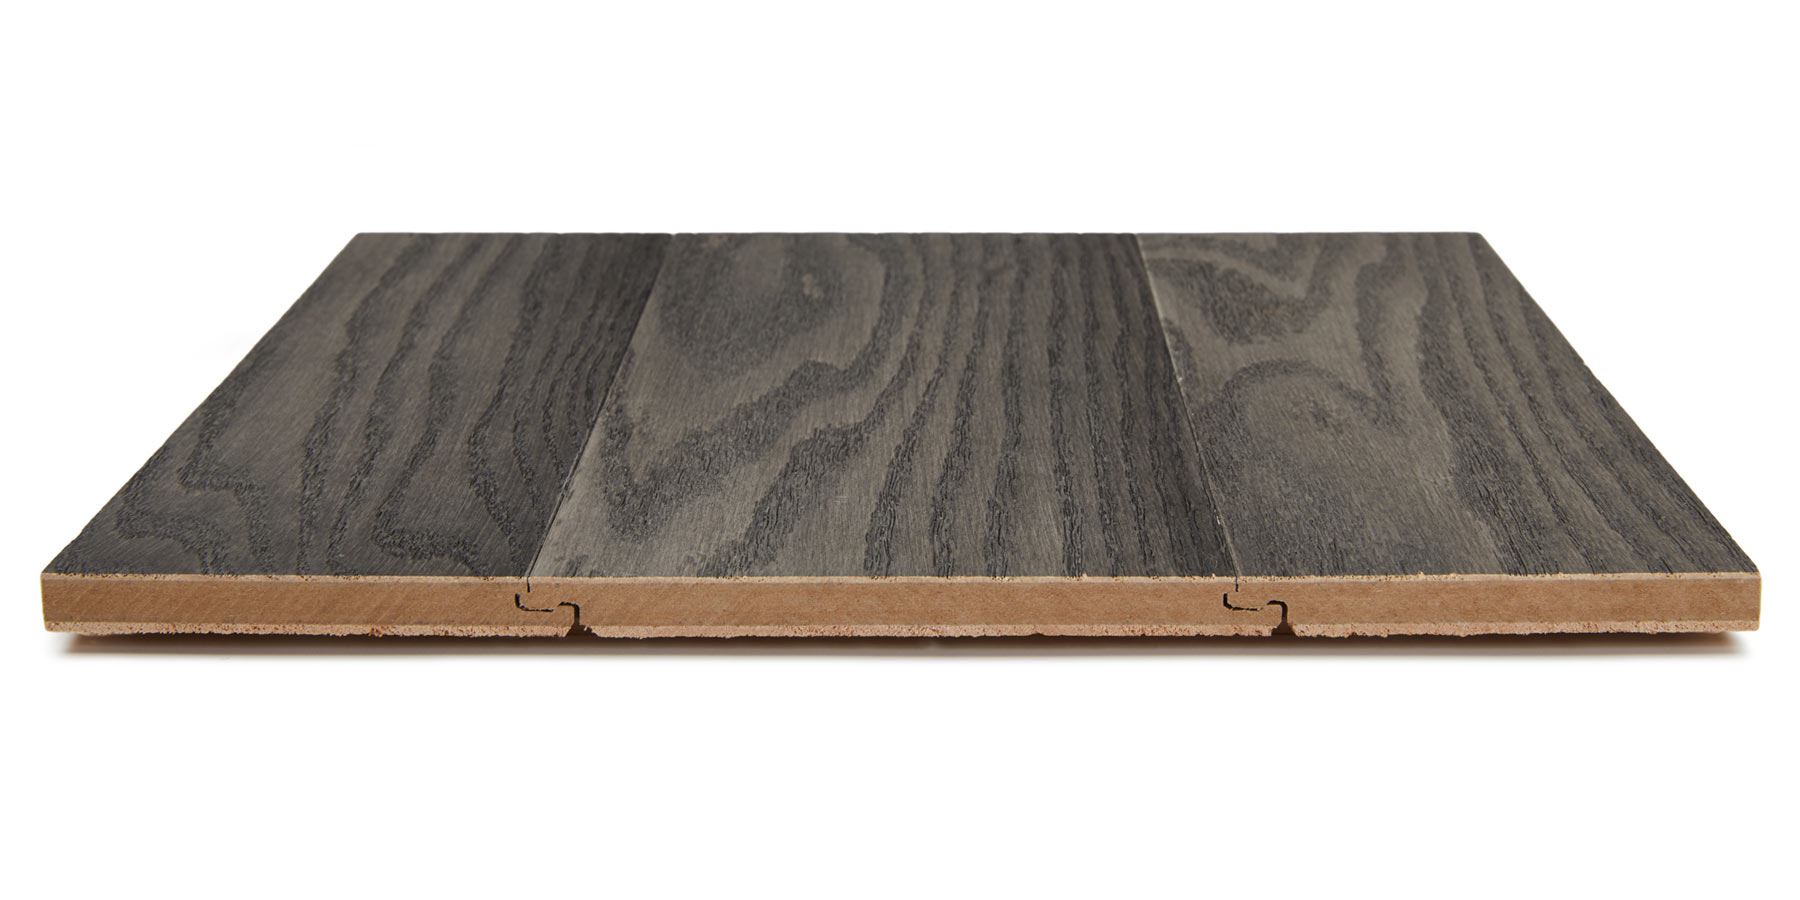 Montclair Engineered Hardwood Flooring